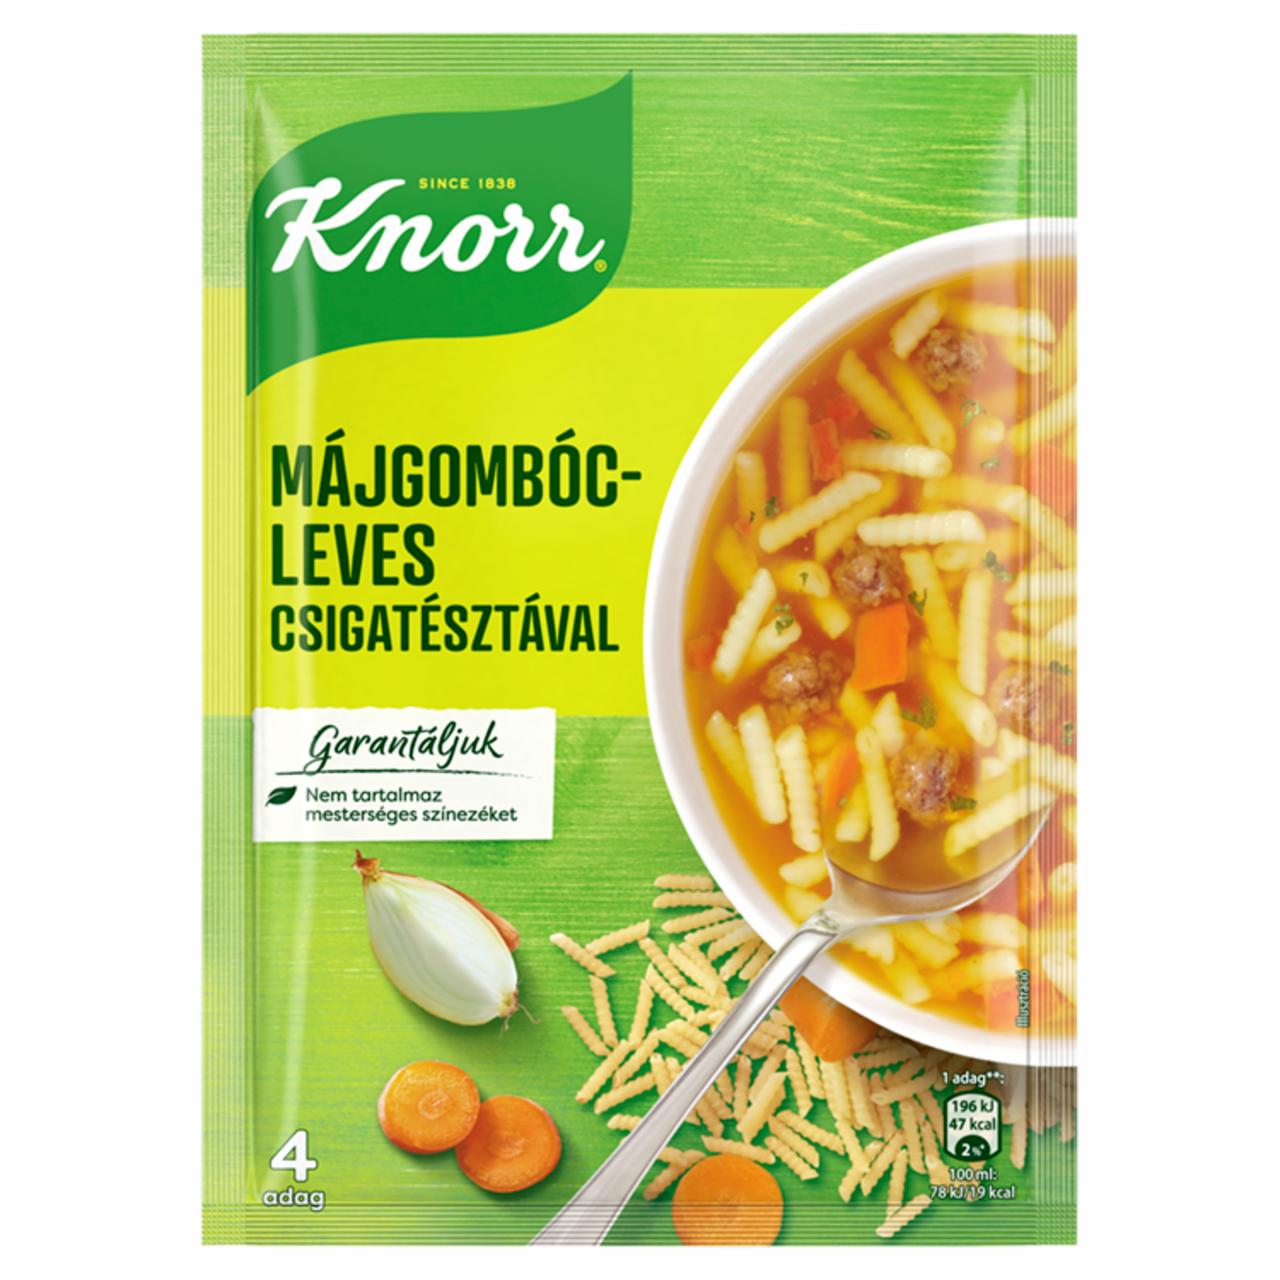 Képek - Knorr májgombócleves csigatésztával 58 g